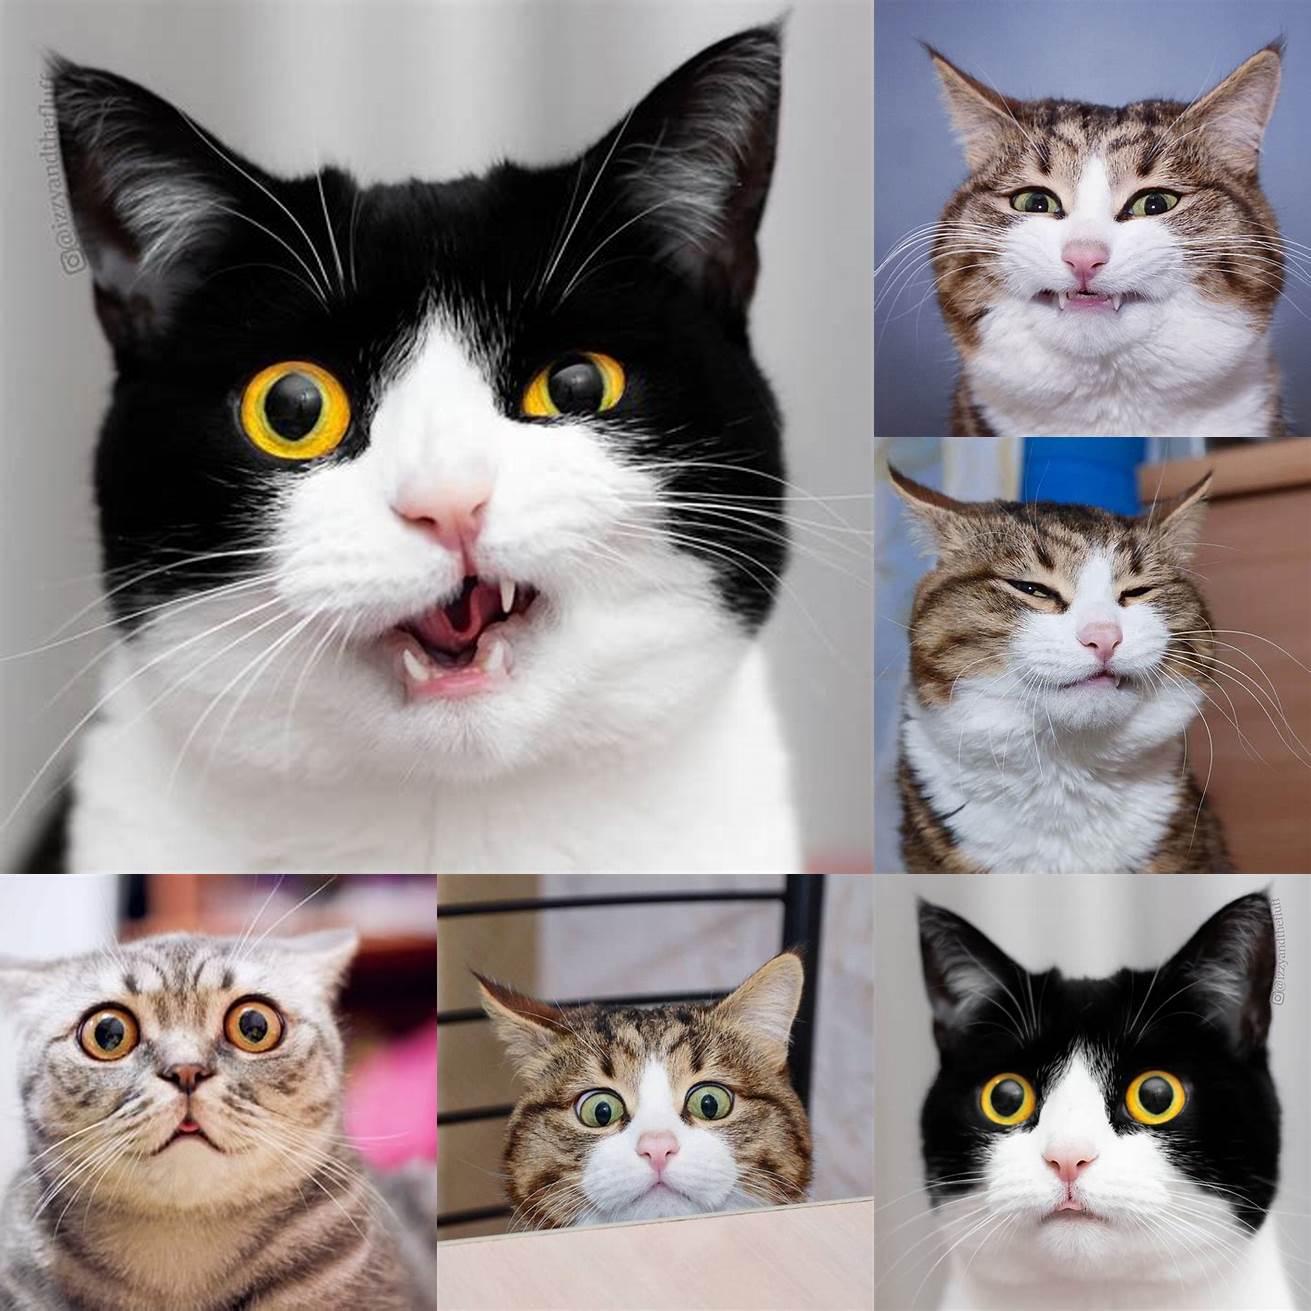 Cat expressions